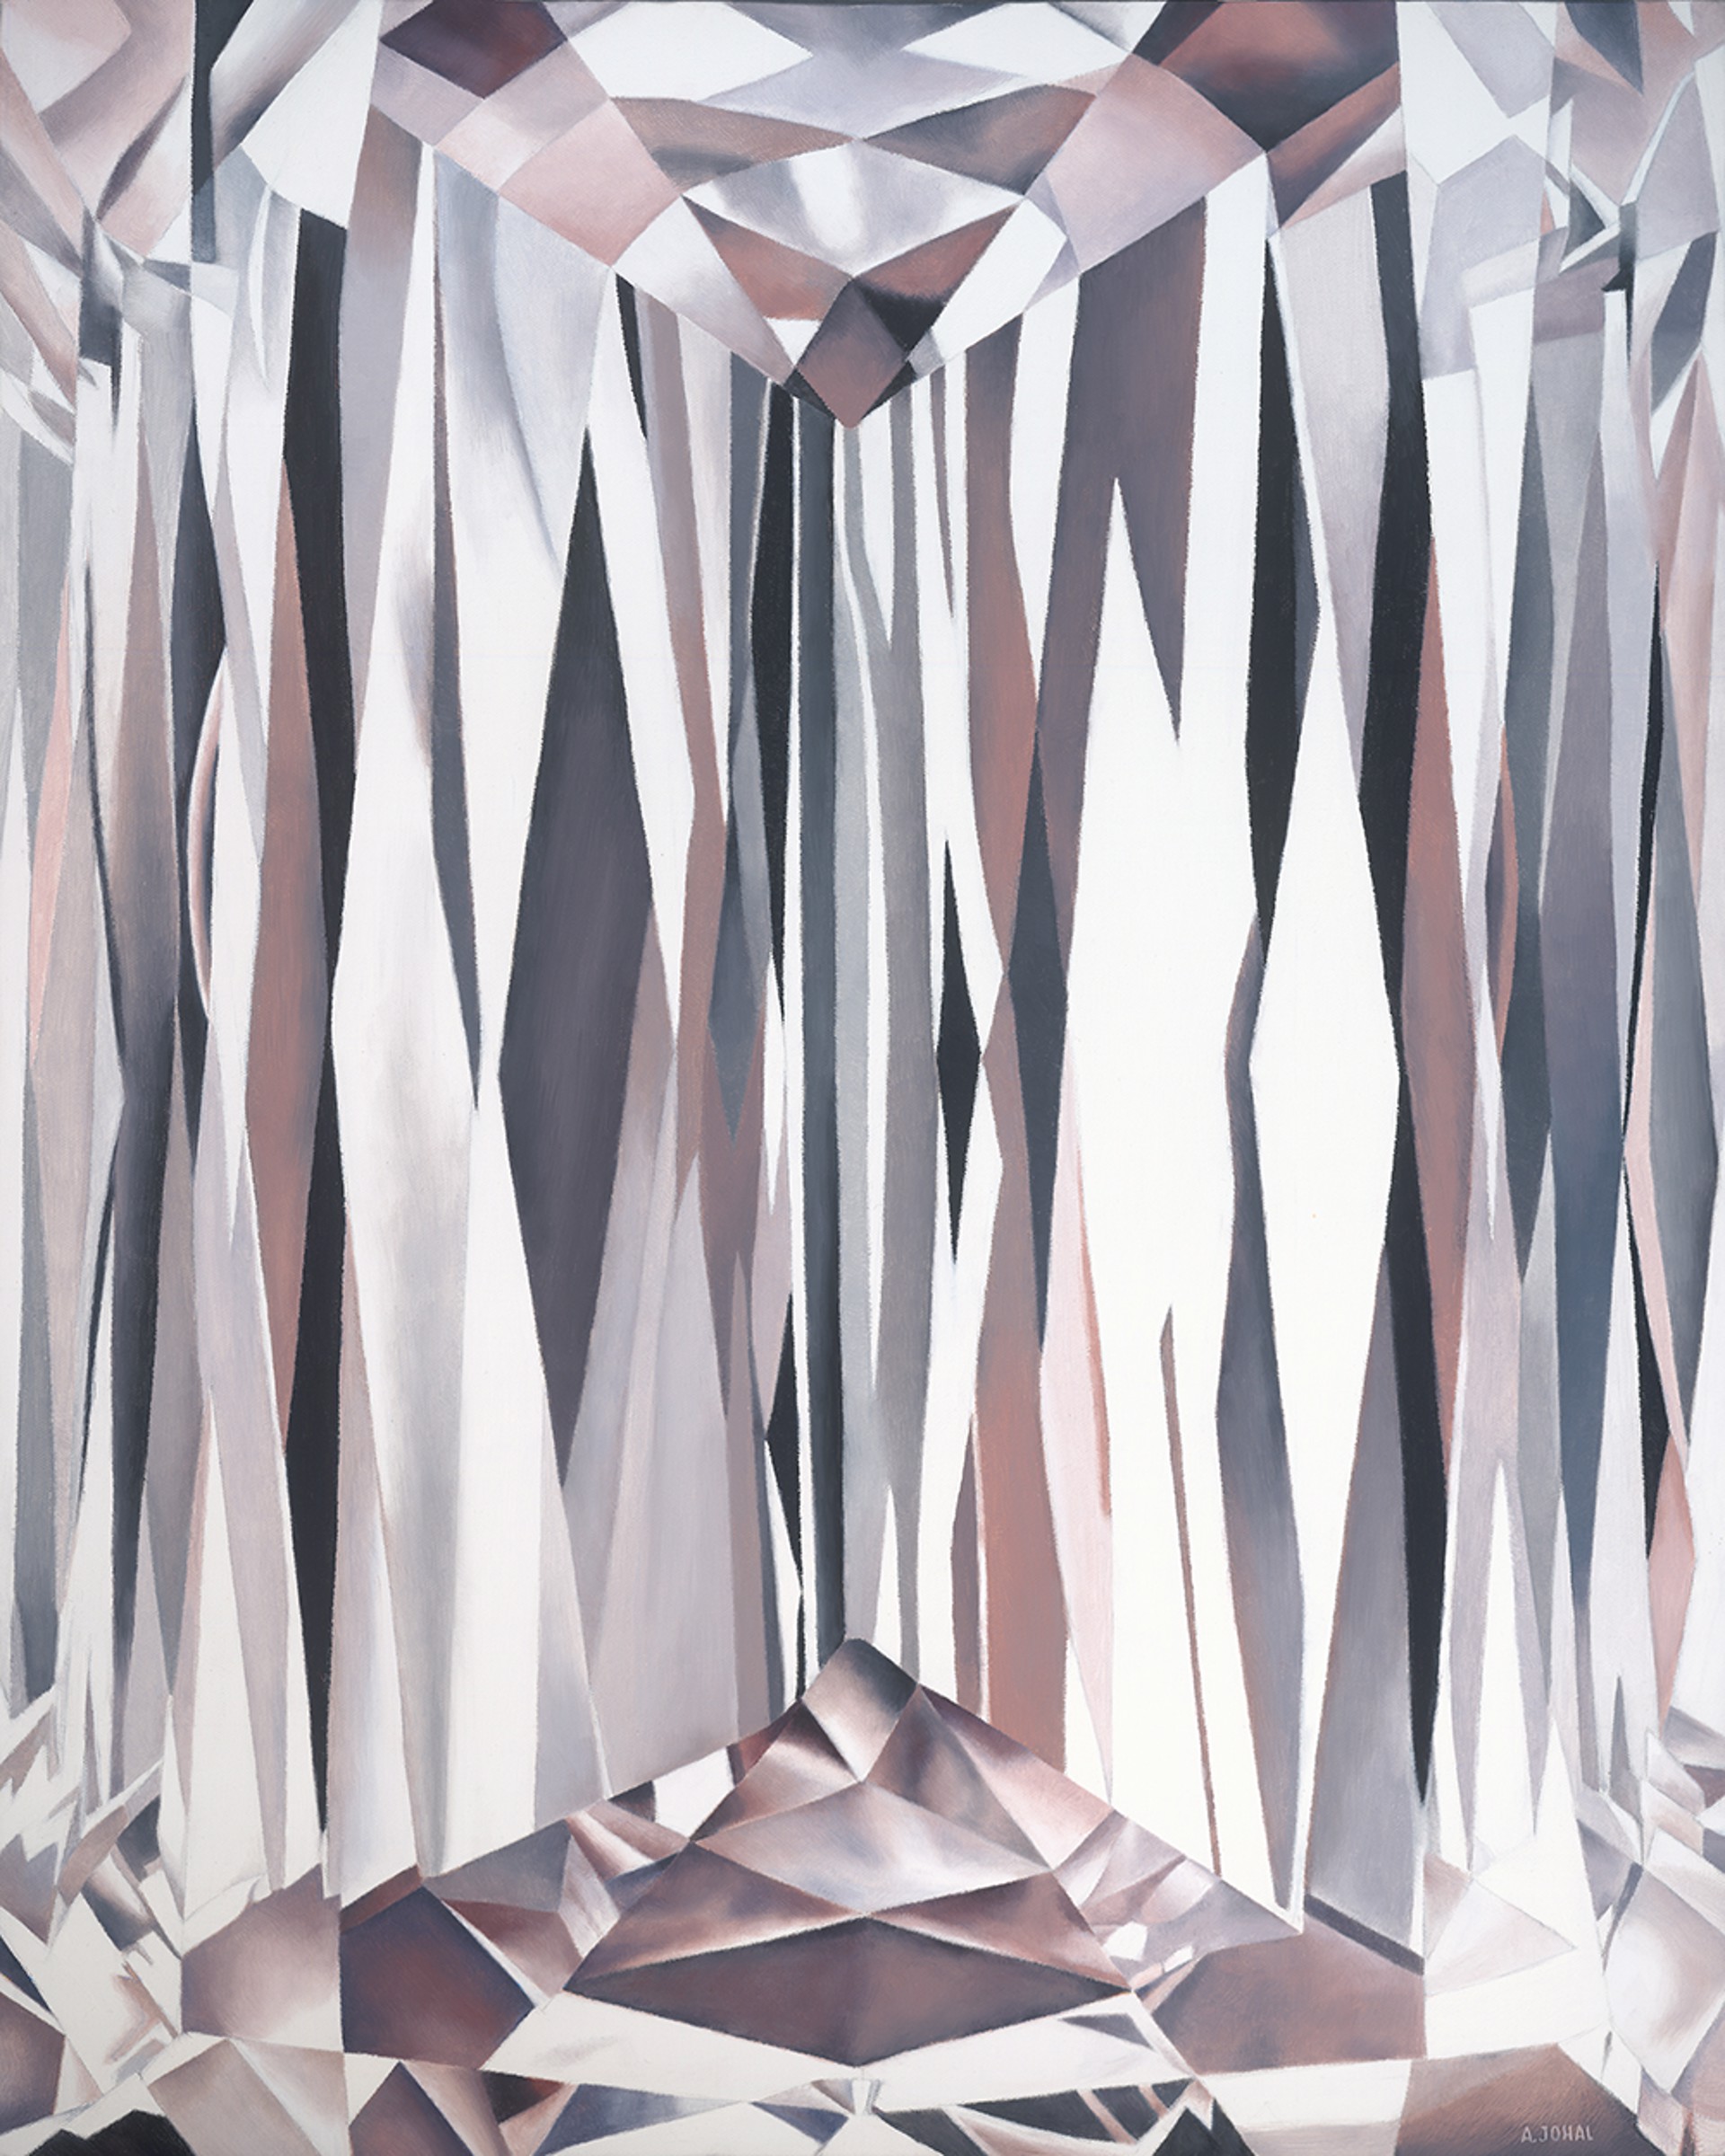 Diamond No.1 (2/250) by Angela Johal - SLATE EDITIONS